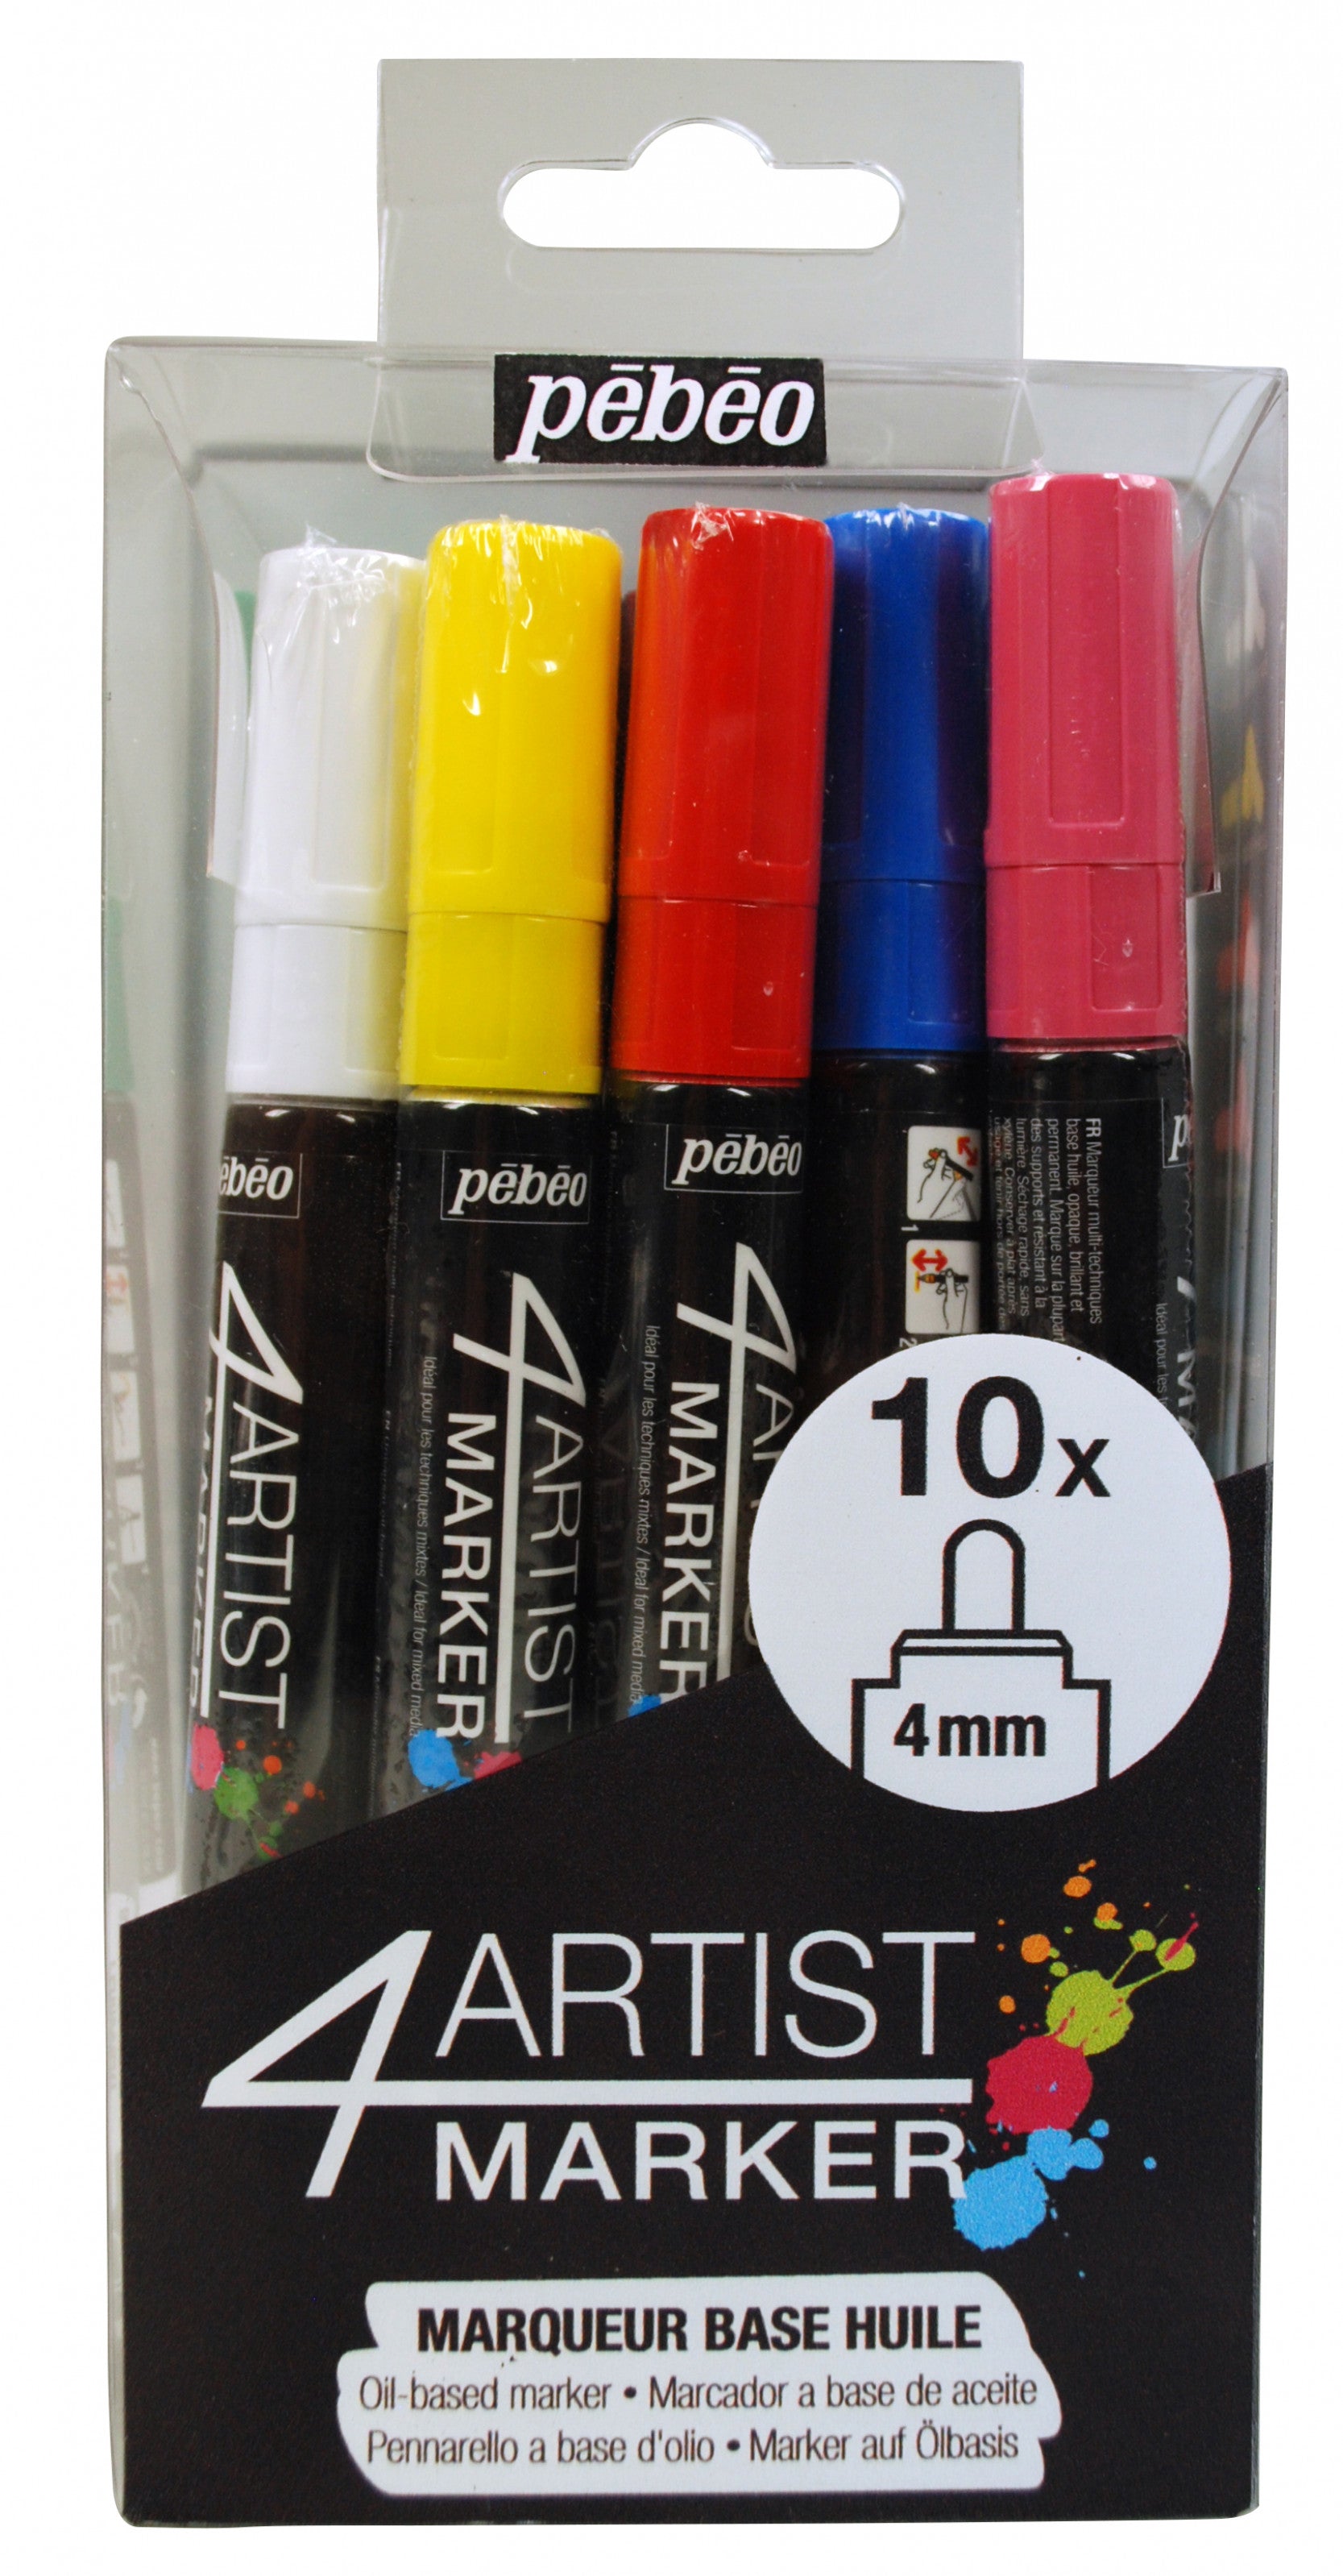 4Artist marker - Set 10x 4mm  مجموعة اقلام فورارتست ١٠ حبات حجم ٤مم